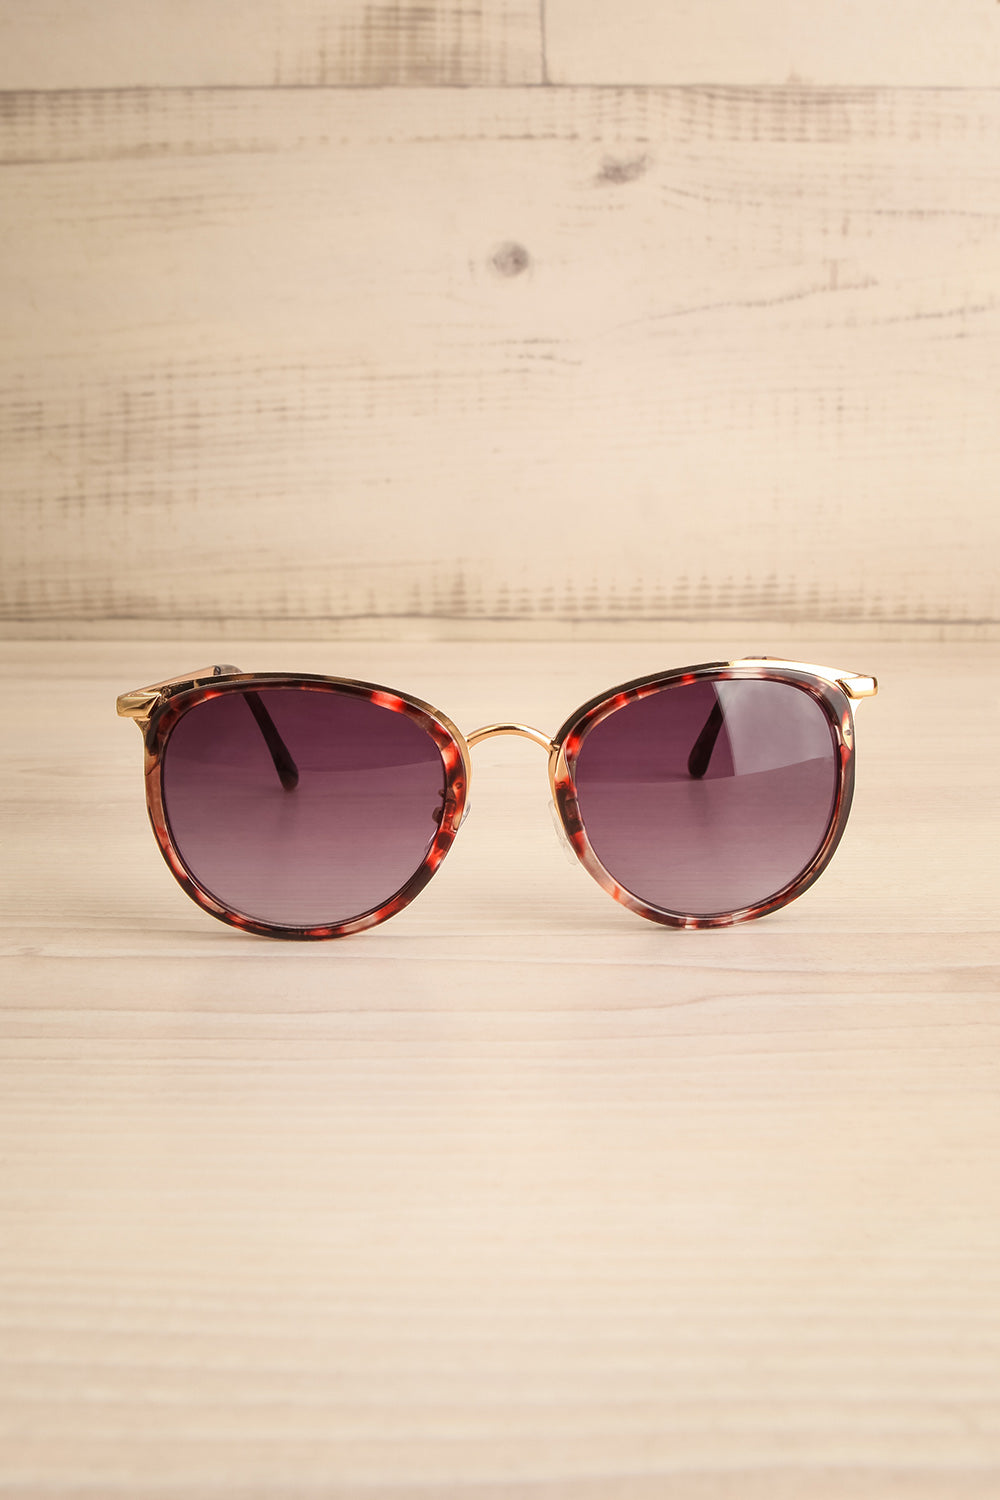 Rajah Tortoiseshell Sunglasses w/ Gold Accents | La petite garçonne front view